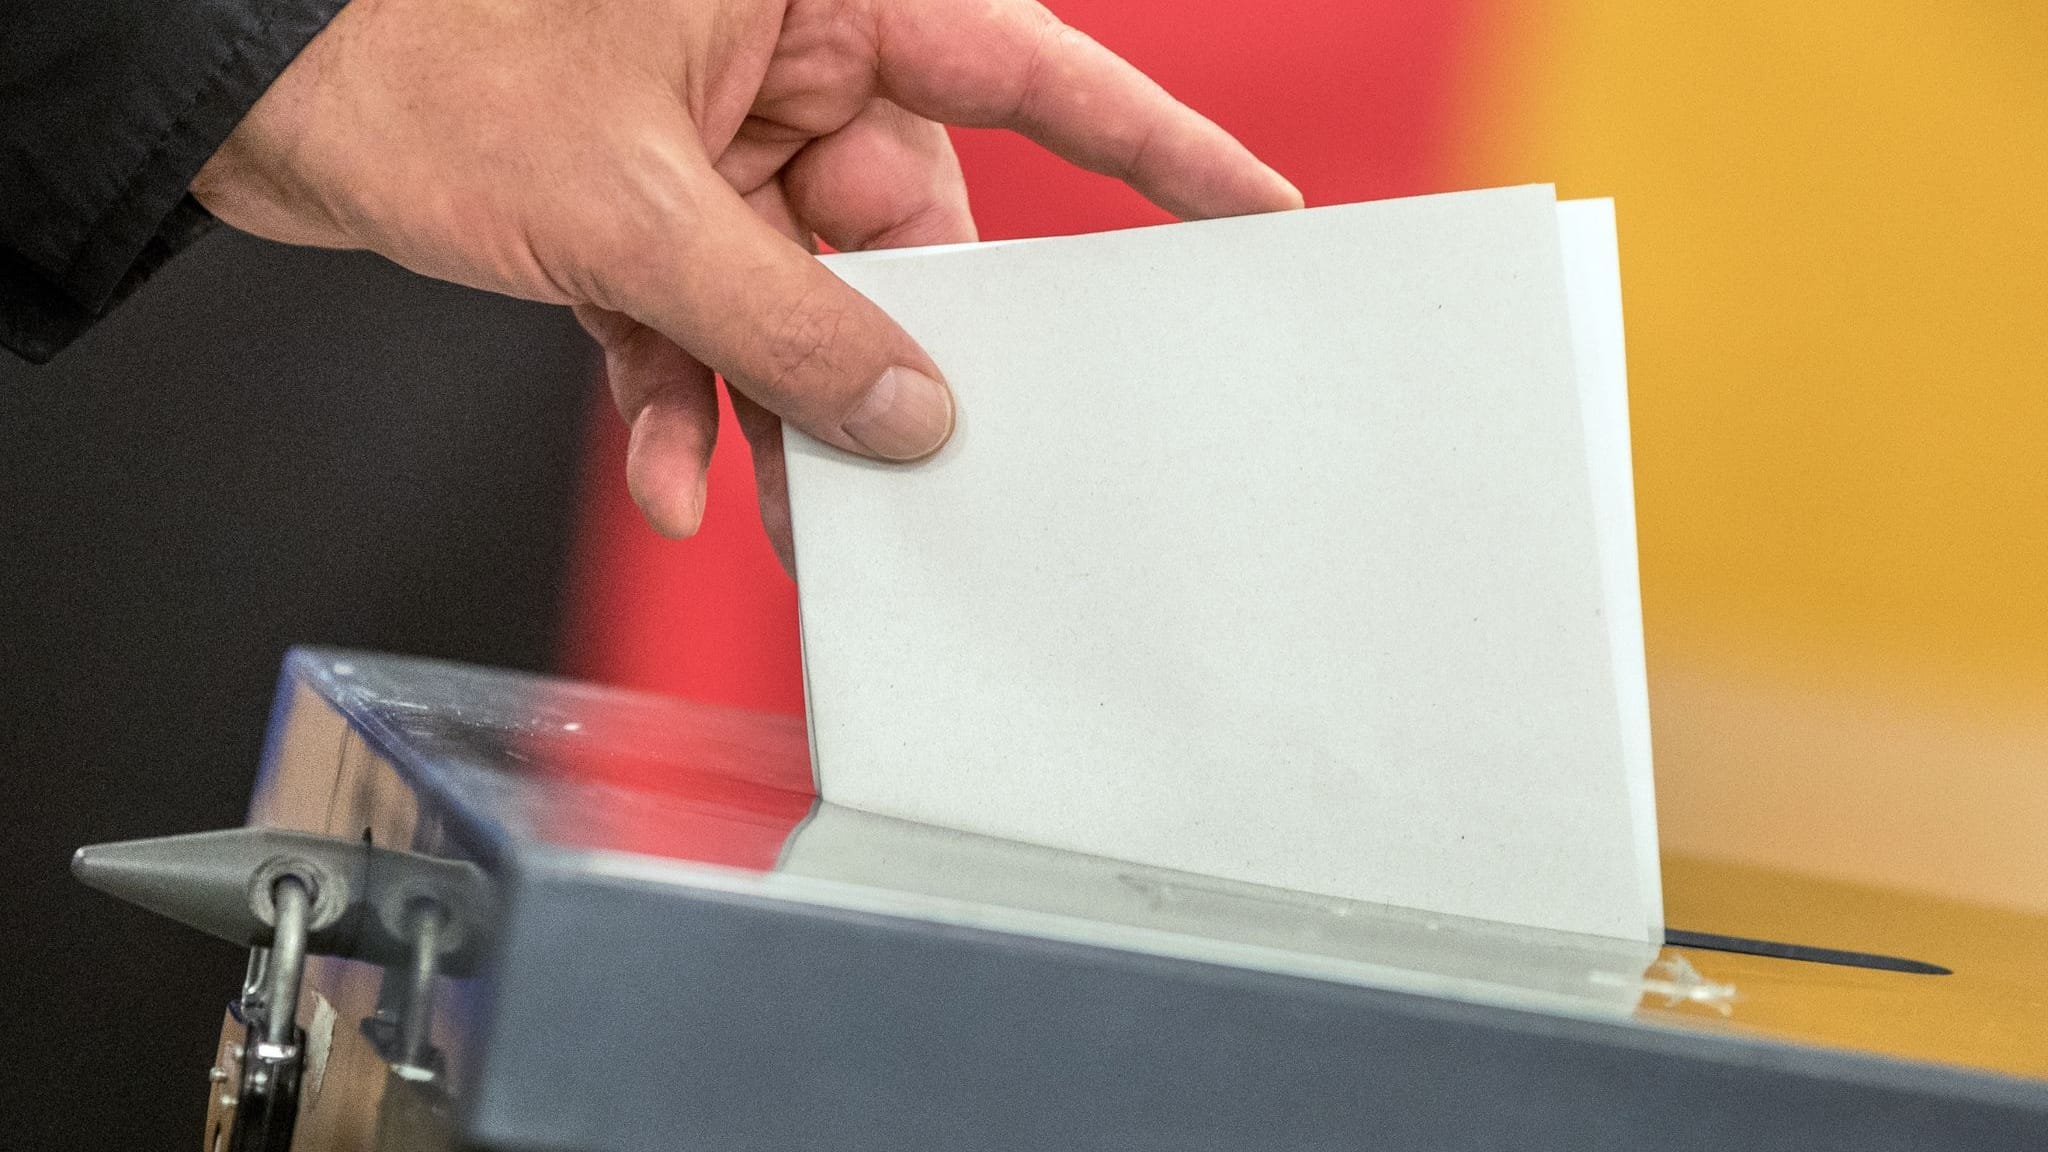 Umfrage: AfD verliert bei Sonntagsfrage, SPD auf Platz 2